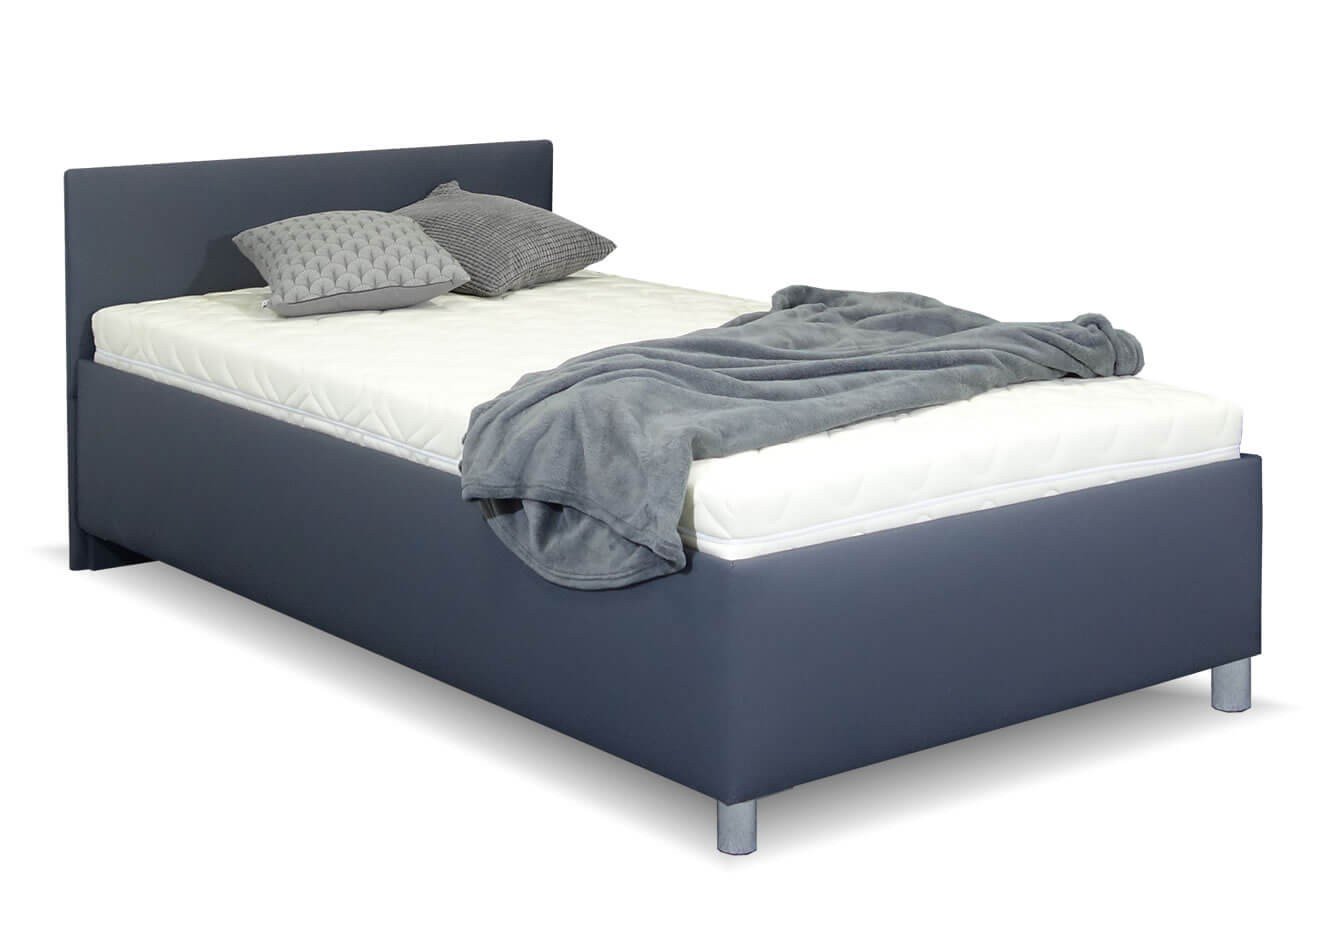 Zvýšená čalouněná postel s úložným prostorem Lyoneta, 90x200, tmavě šedá